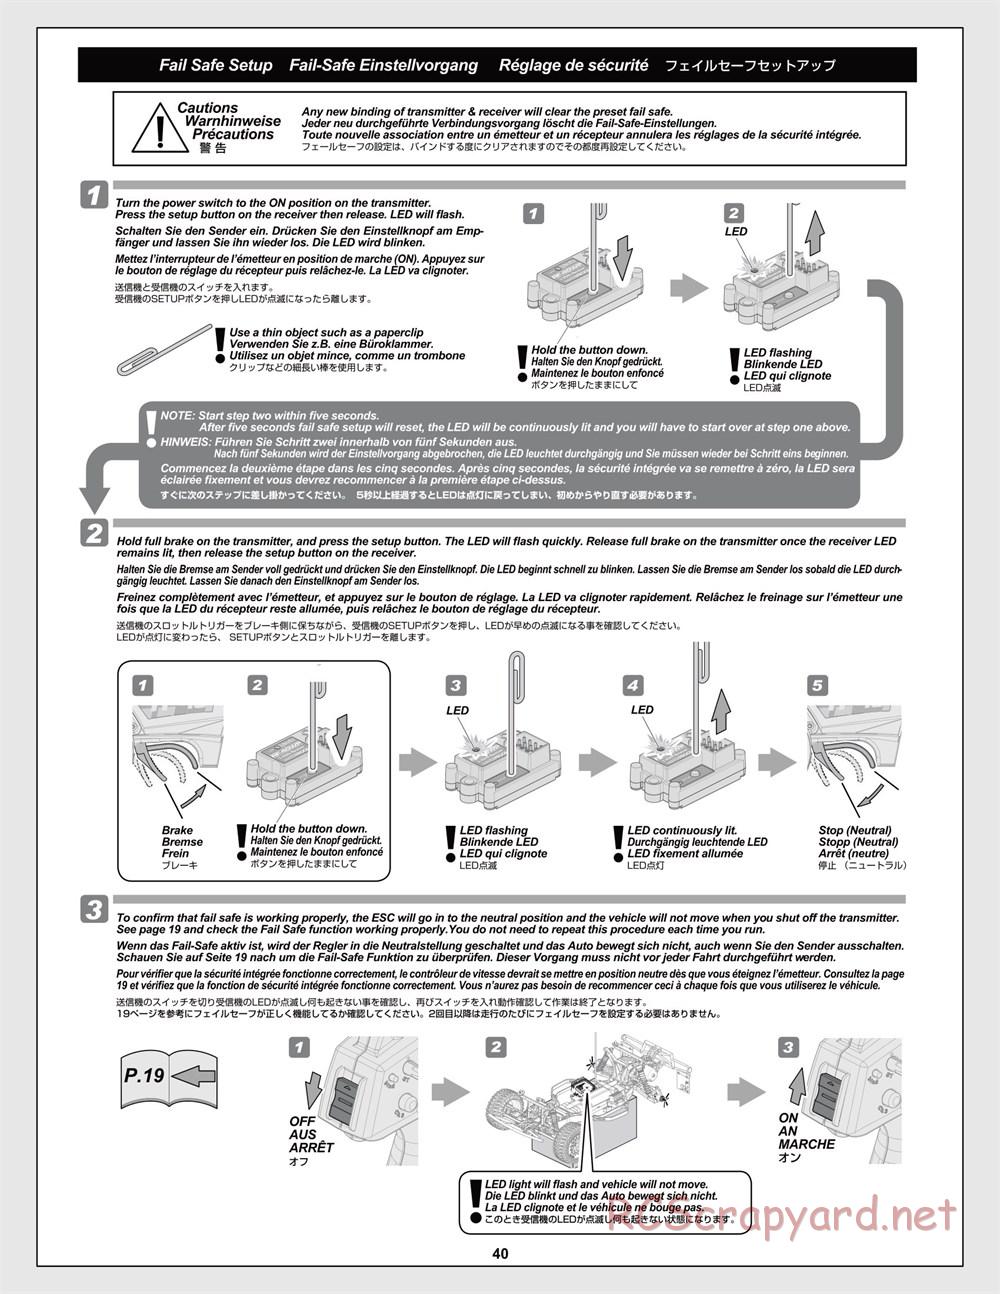 HPI - Trophy Flux Buggy - Manual - Page 40